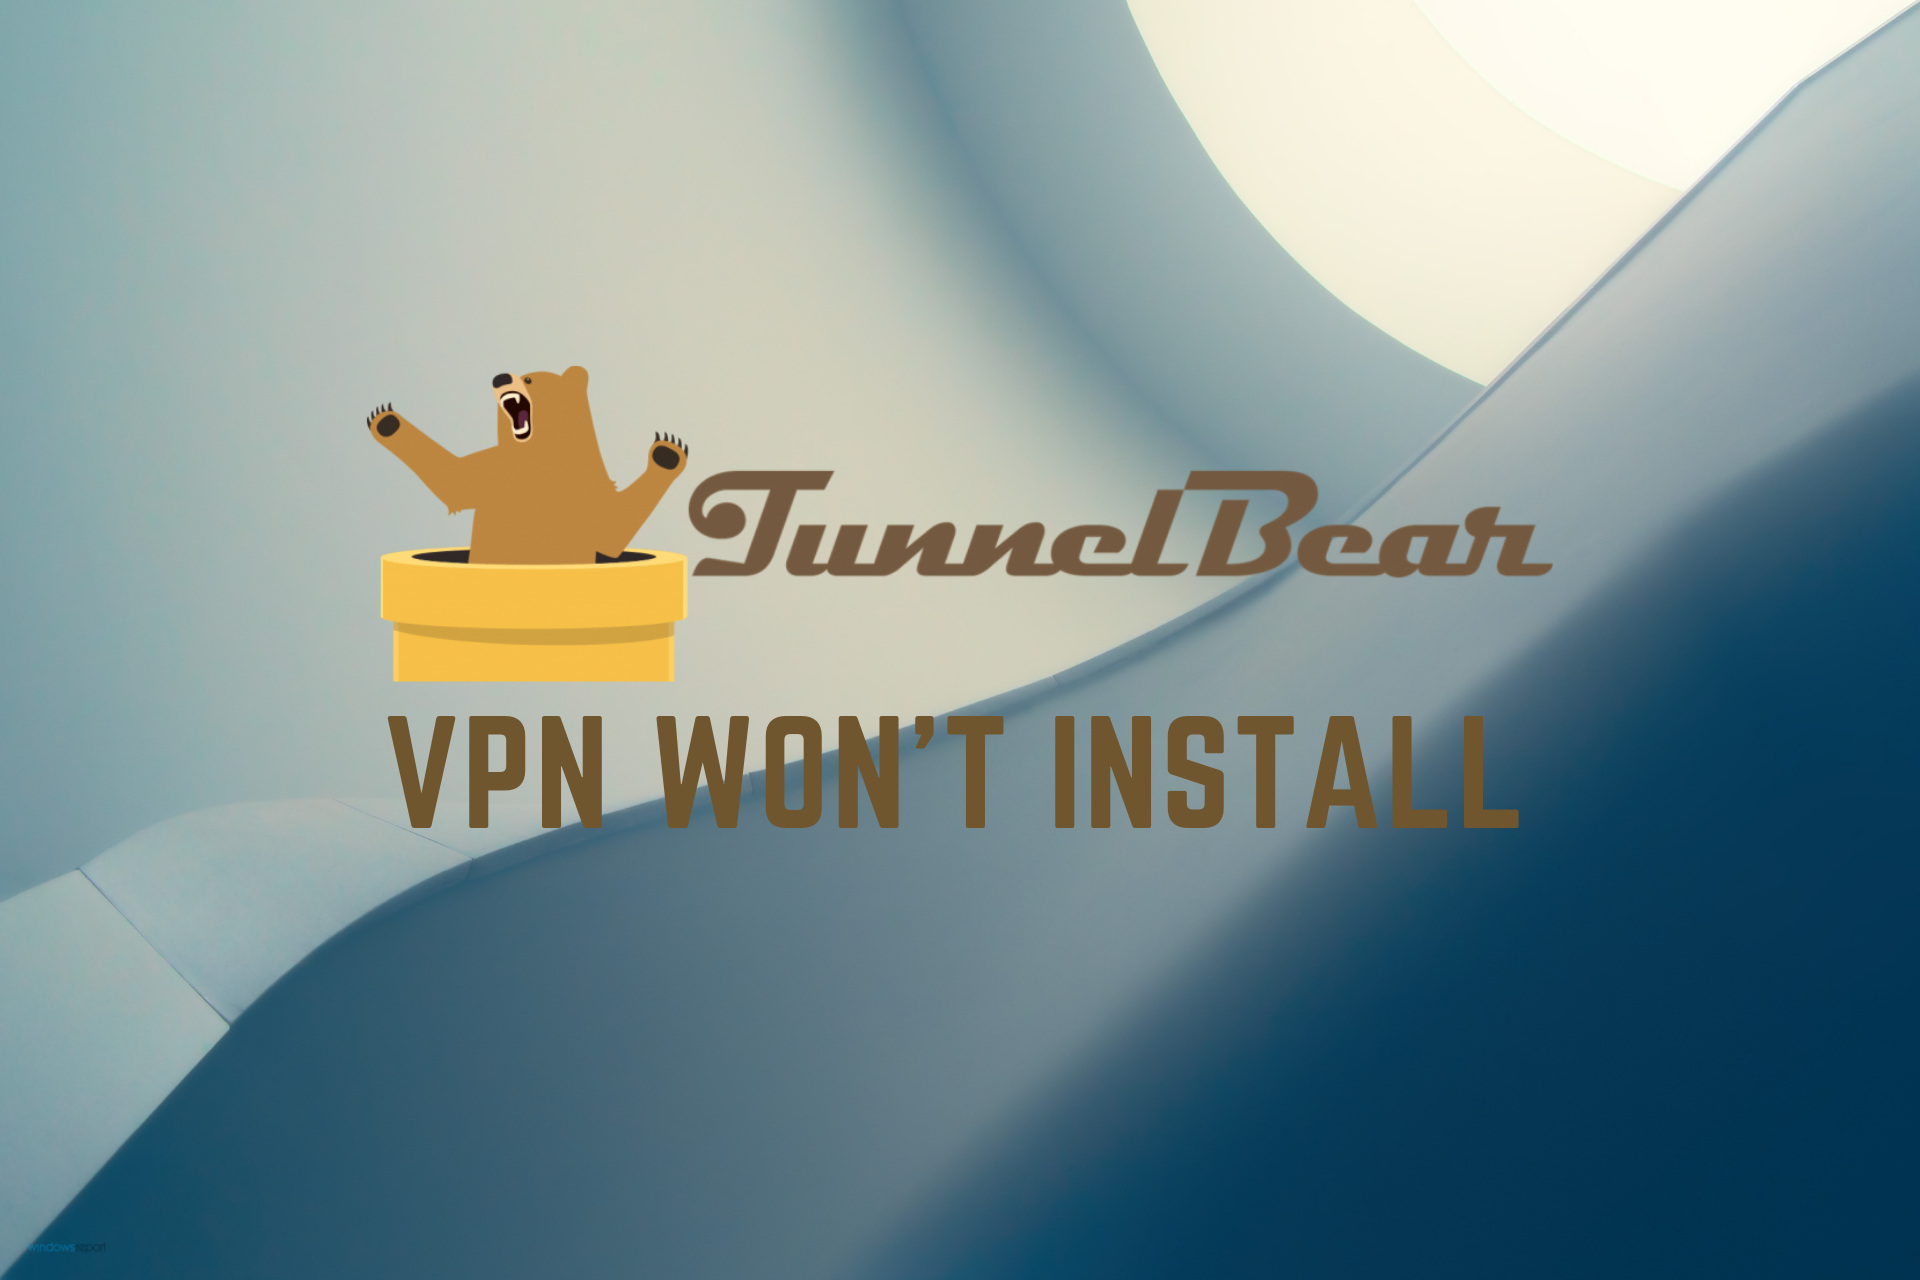 tunnelbear vpn free download for mac